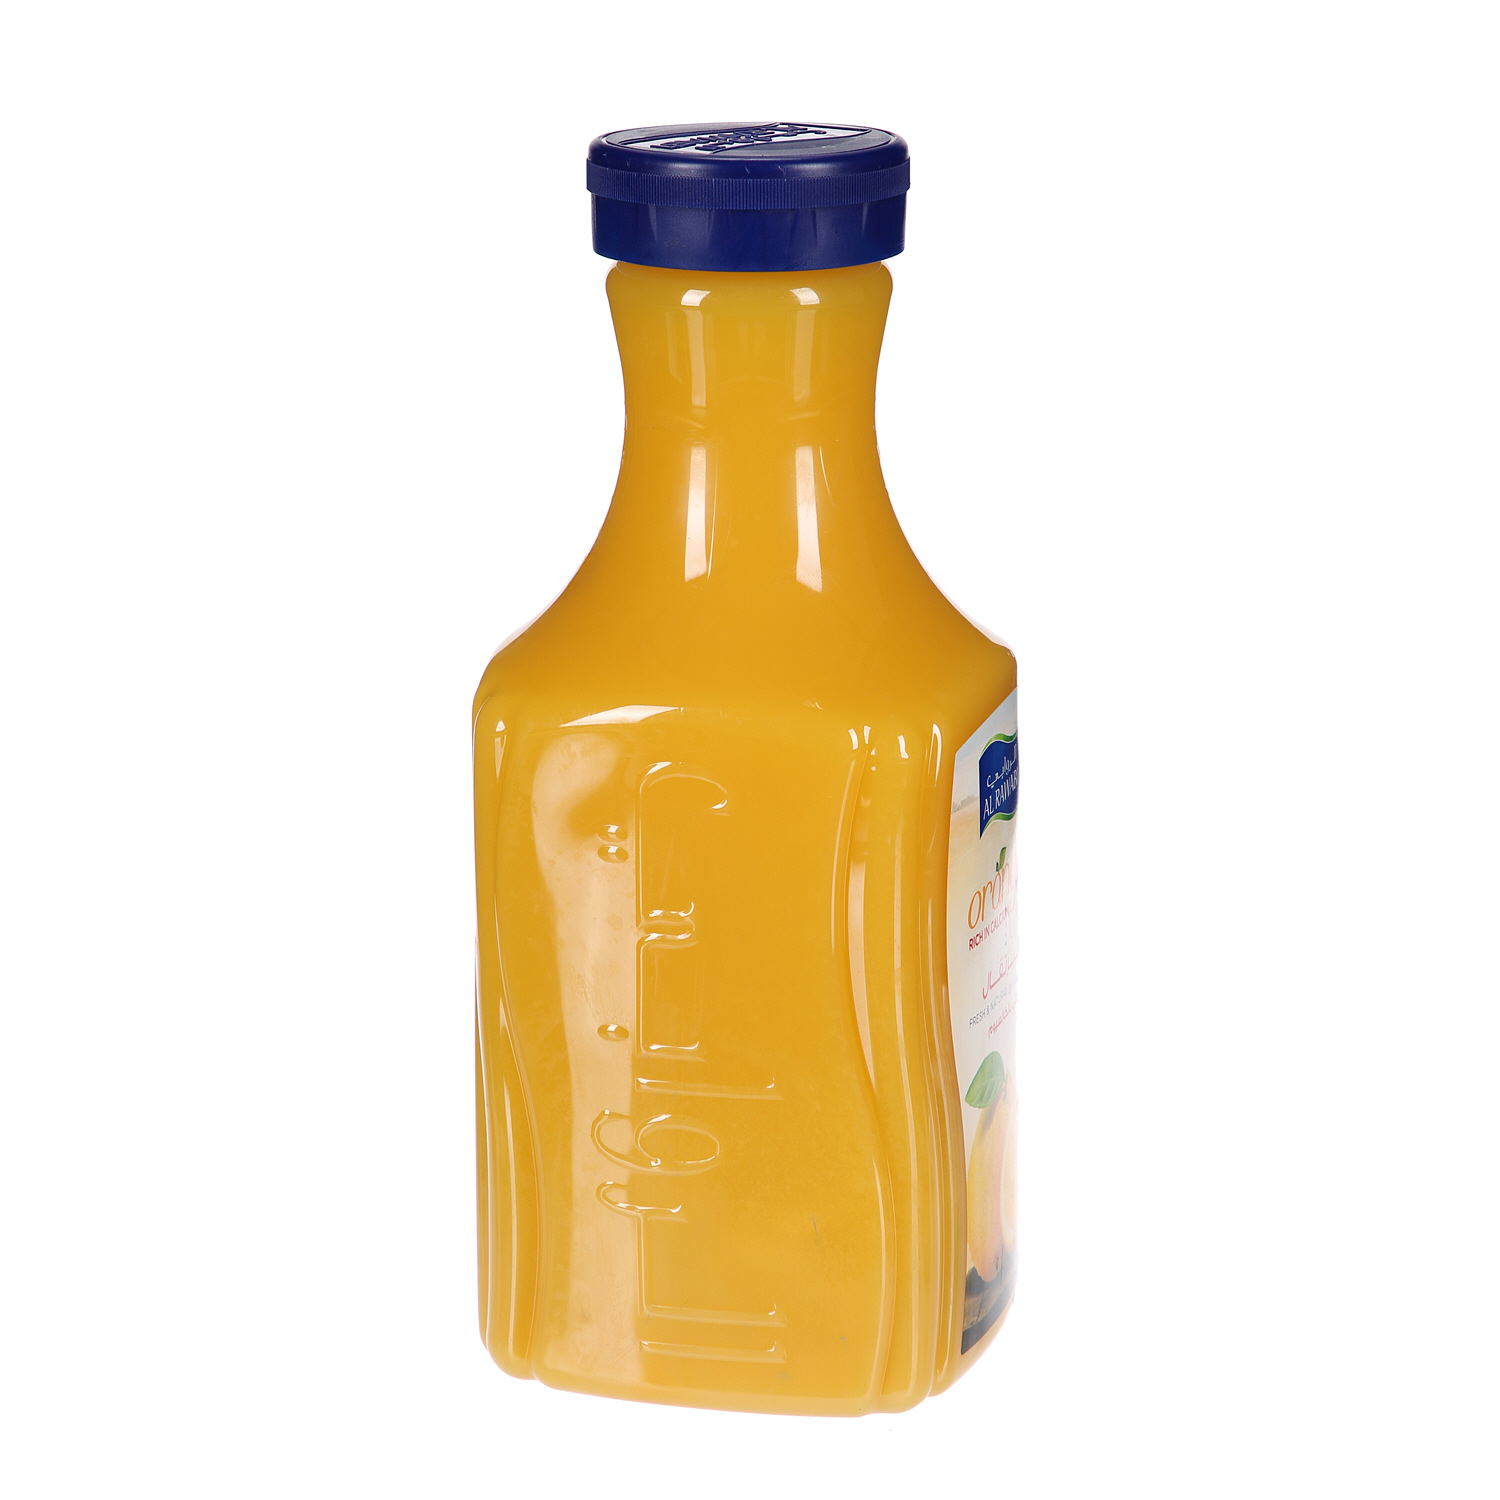 الروابي عصير البرتقال غني بالكالسيوم 1.75 لتر